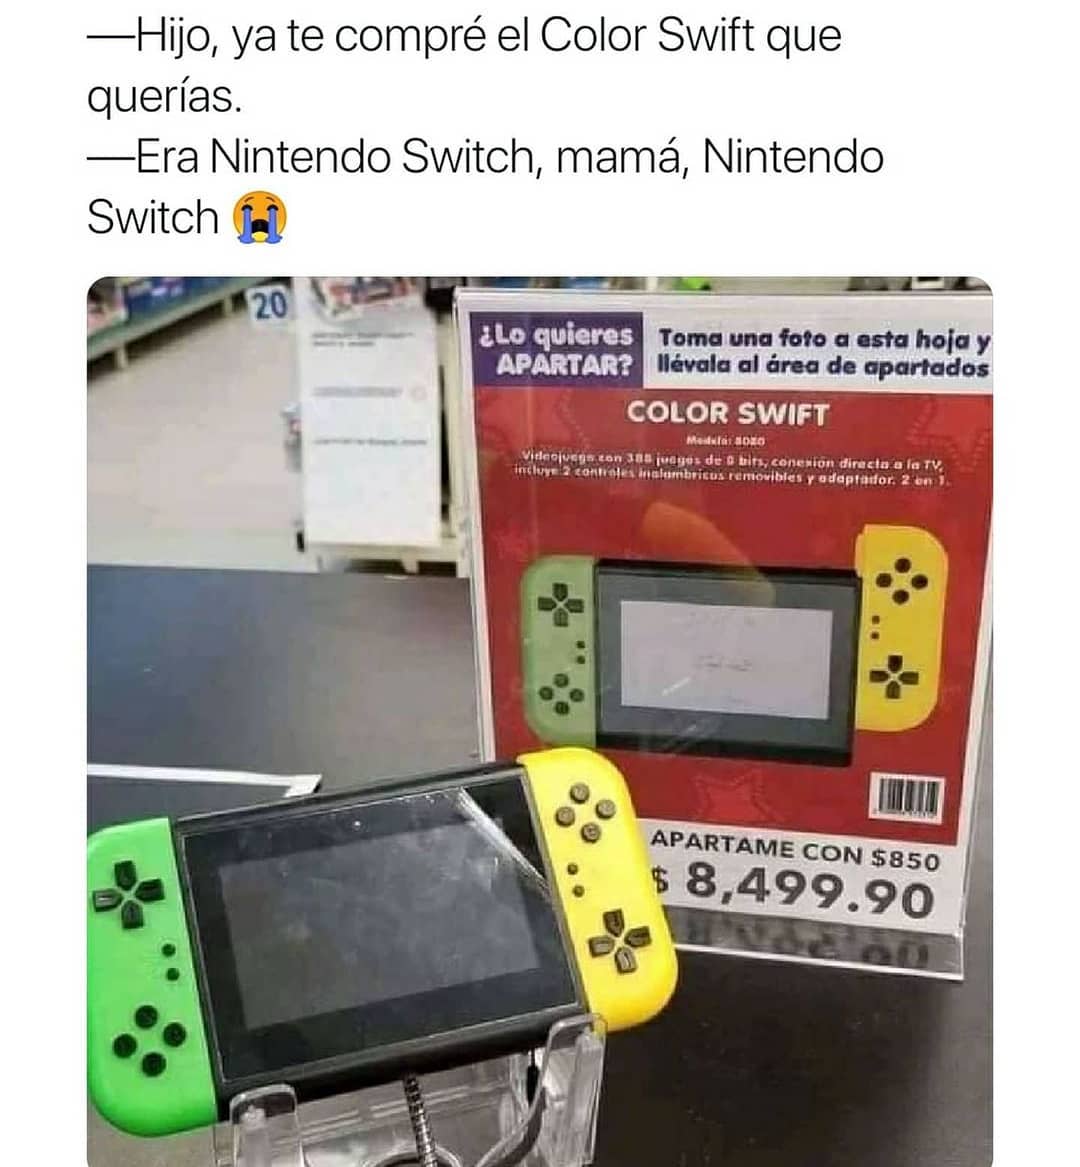 Hijo, ya te compré el Color Swift que querías. Era Nintendo Switch, mamá, Nintendo Switch.